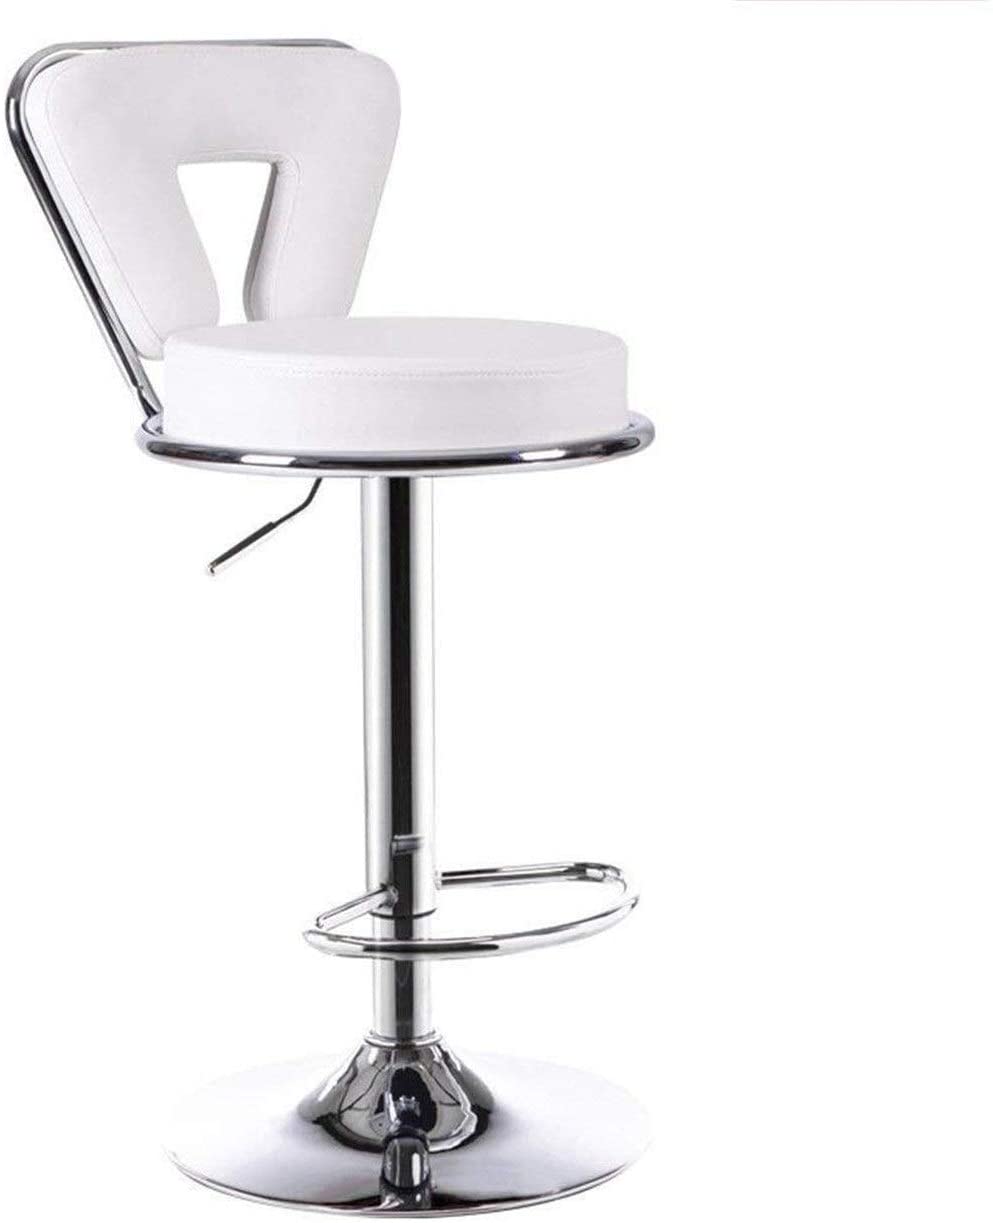 eunicon white bar stool with gas lift